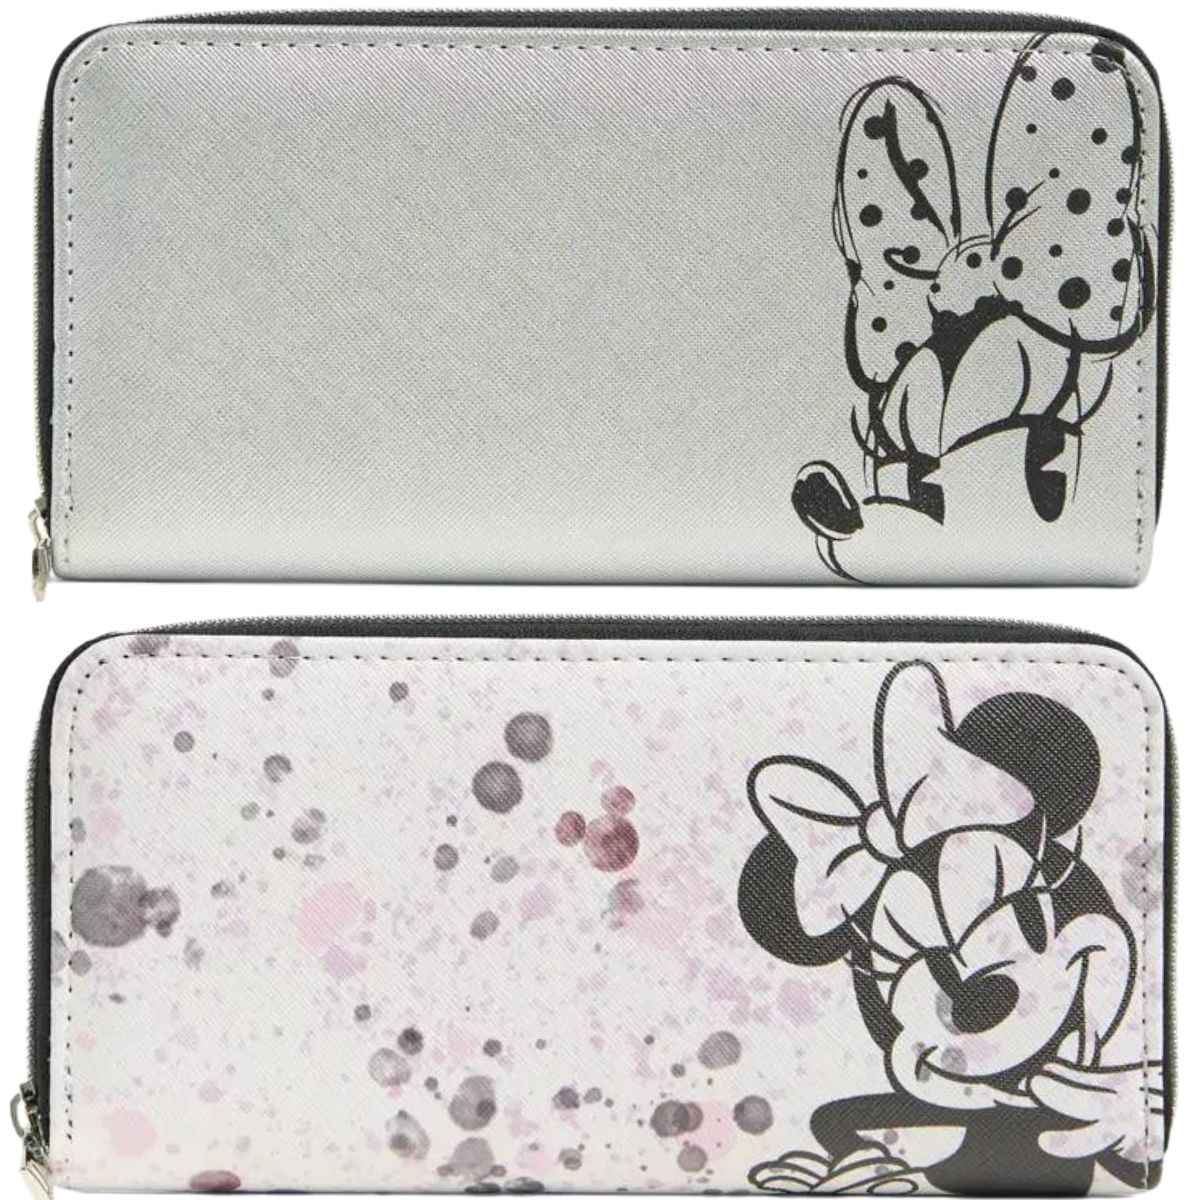 Minnie mouse zip around wallets